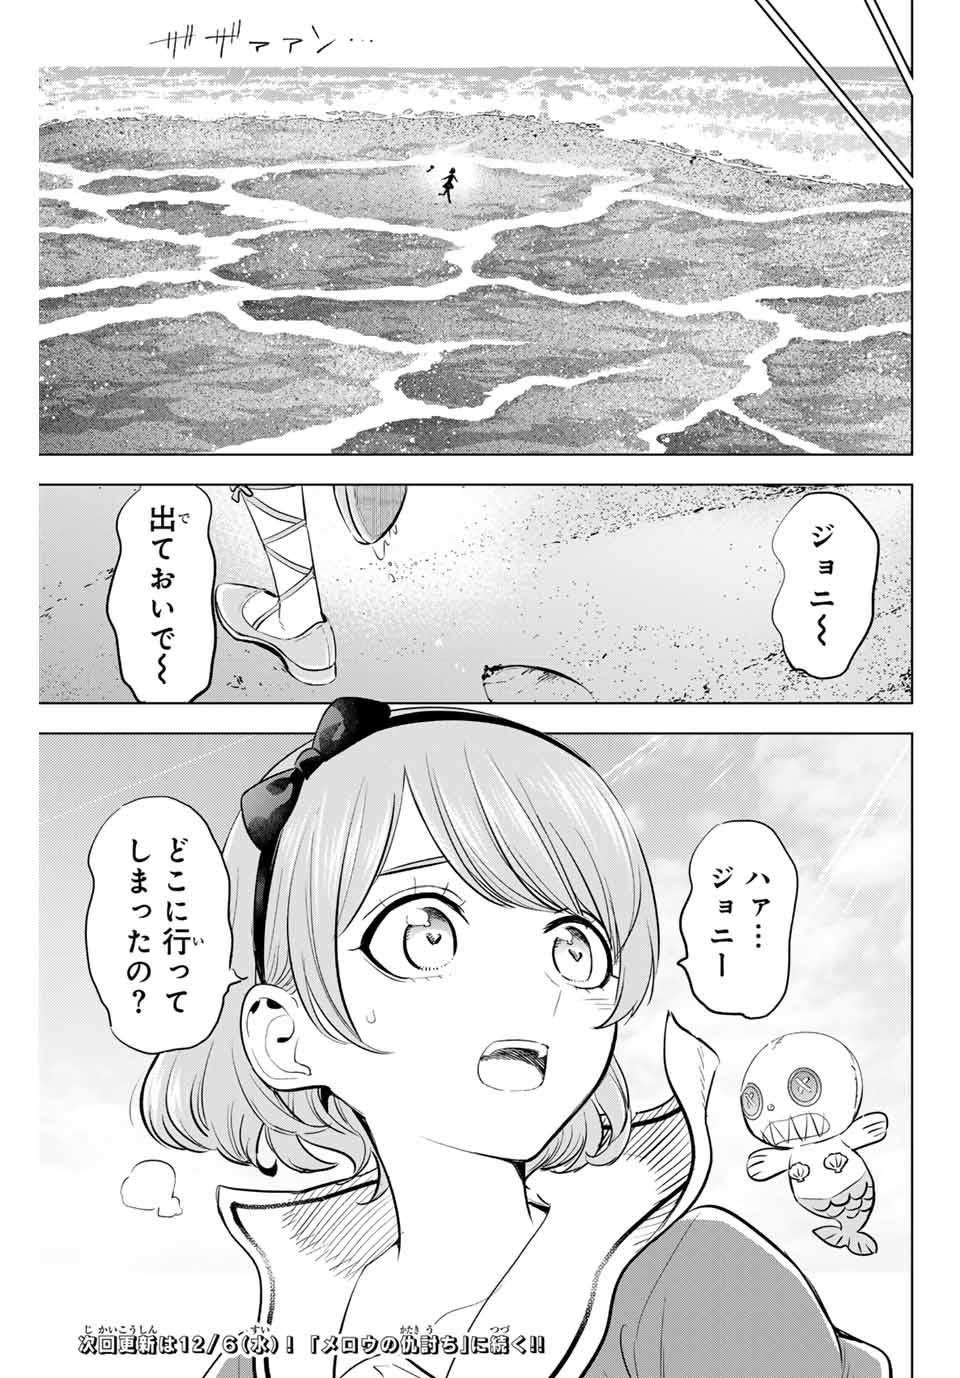 Kuroneko to Majo no Kyoushitsu - Chapter 47 - Page 25